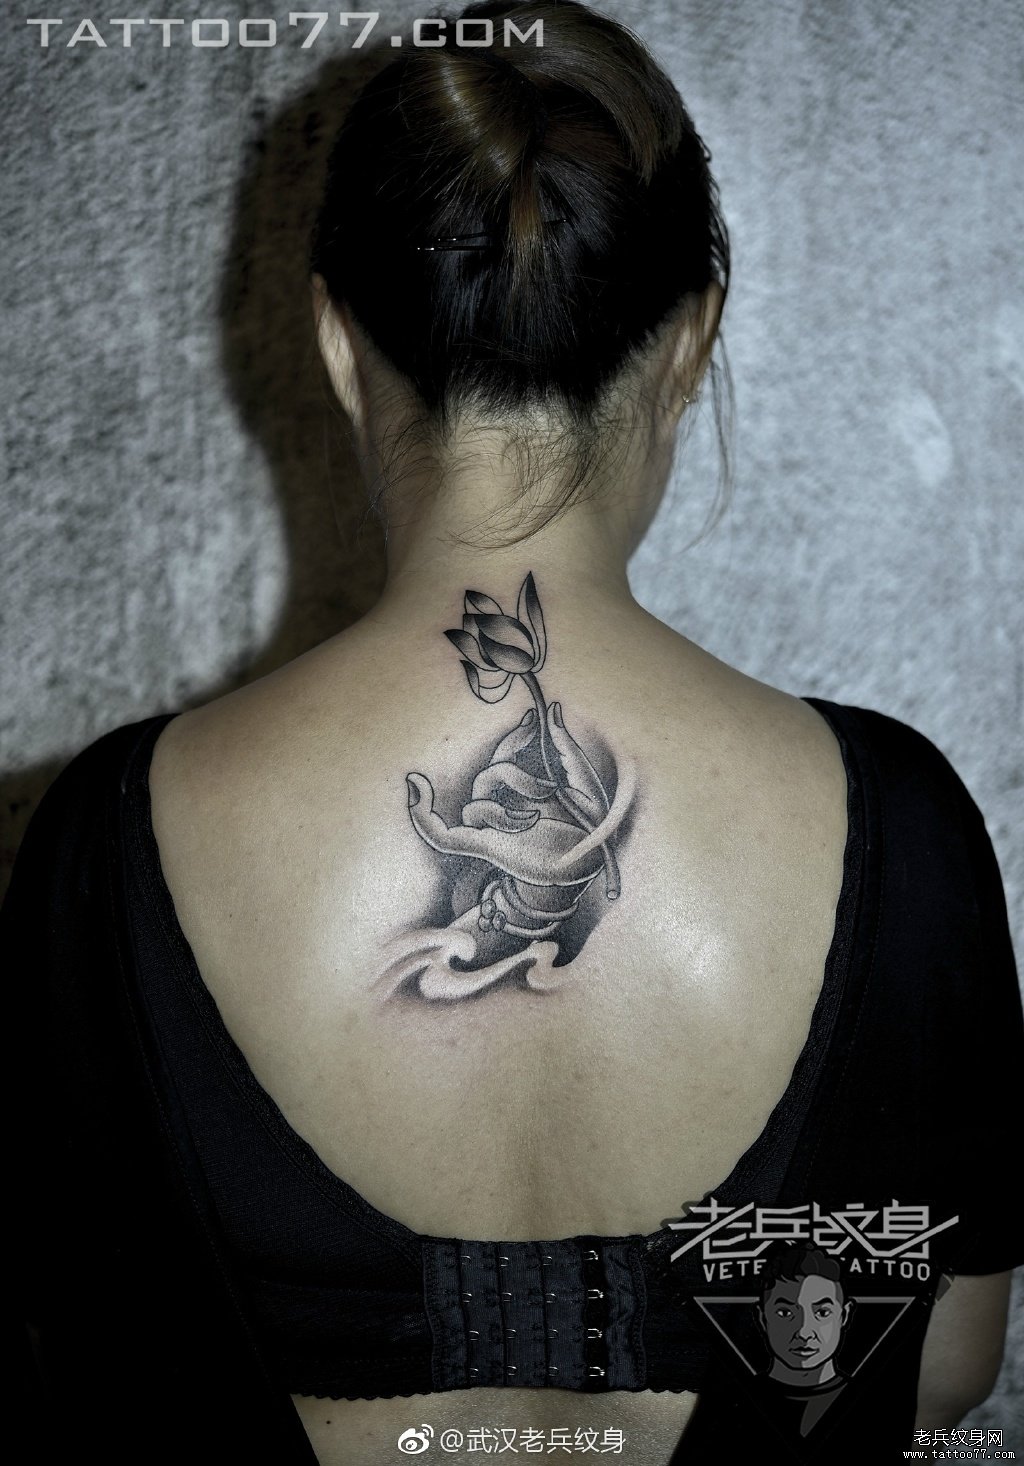 个性的满背妹子纹身图案由武汉纹身店推荐